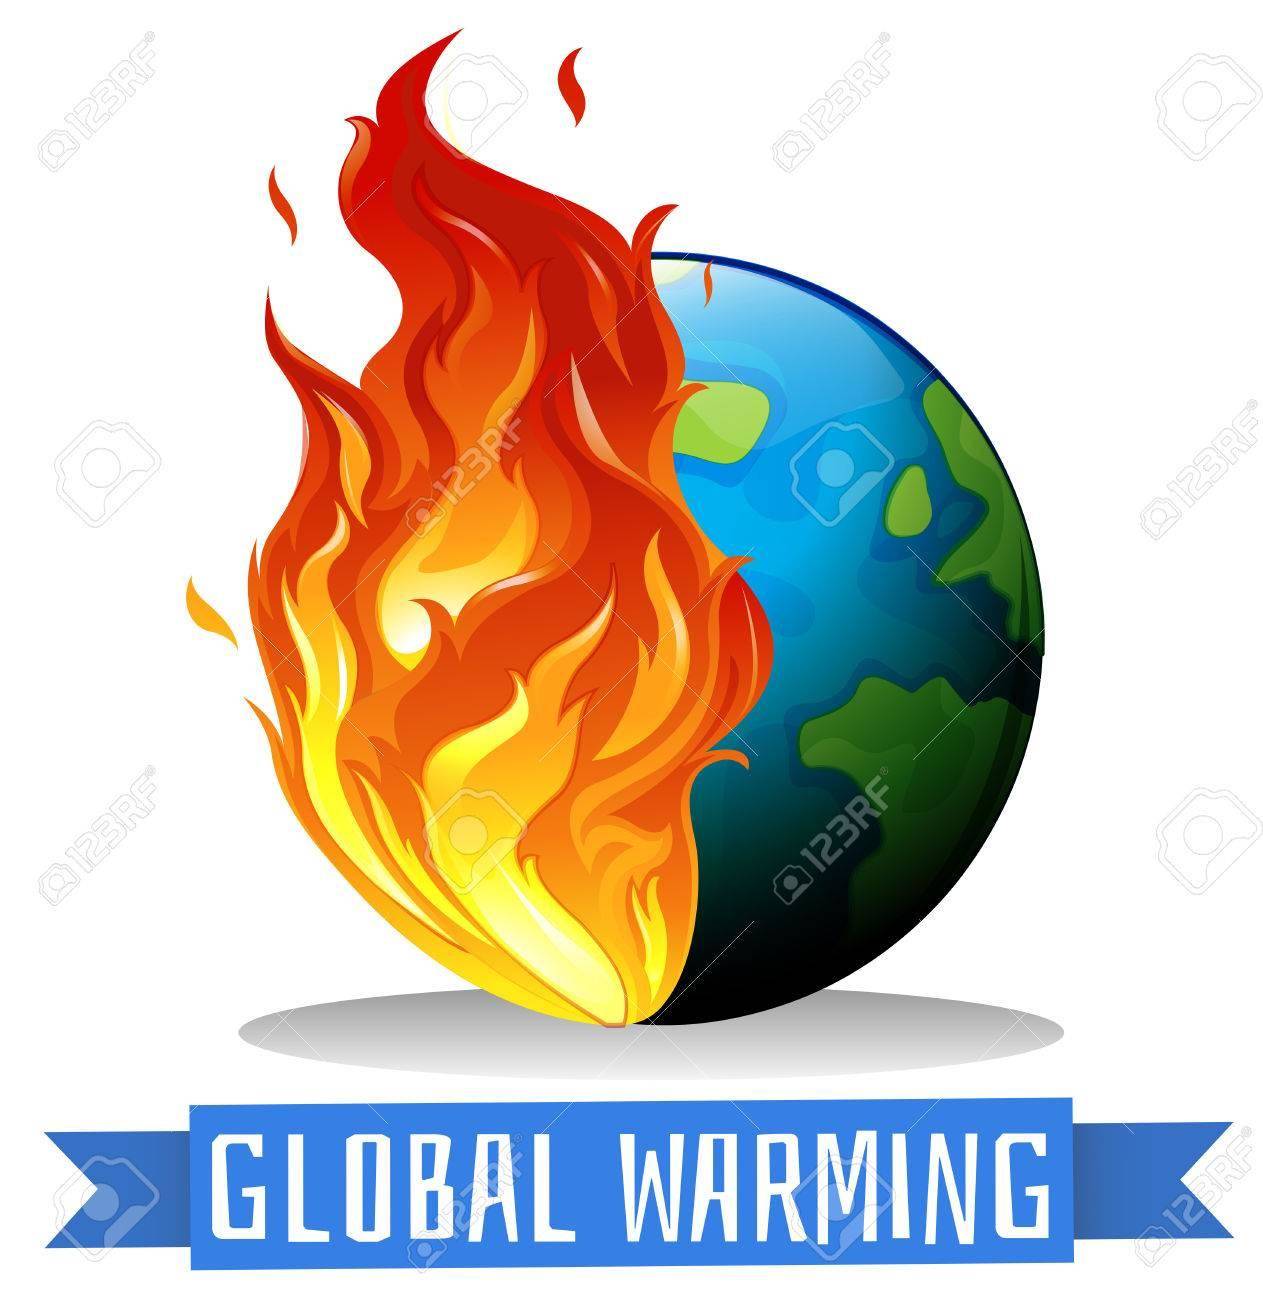 तप रही है धरती, ग्लोबल वार्मिंग के कारण और संभावित नतीजे जान लीजिए